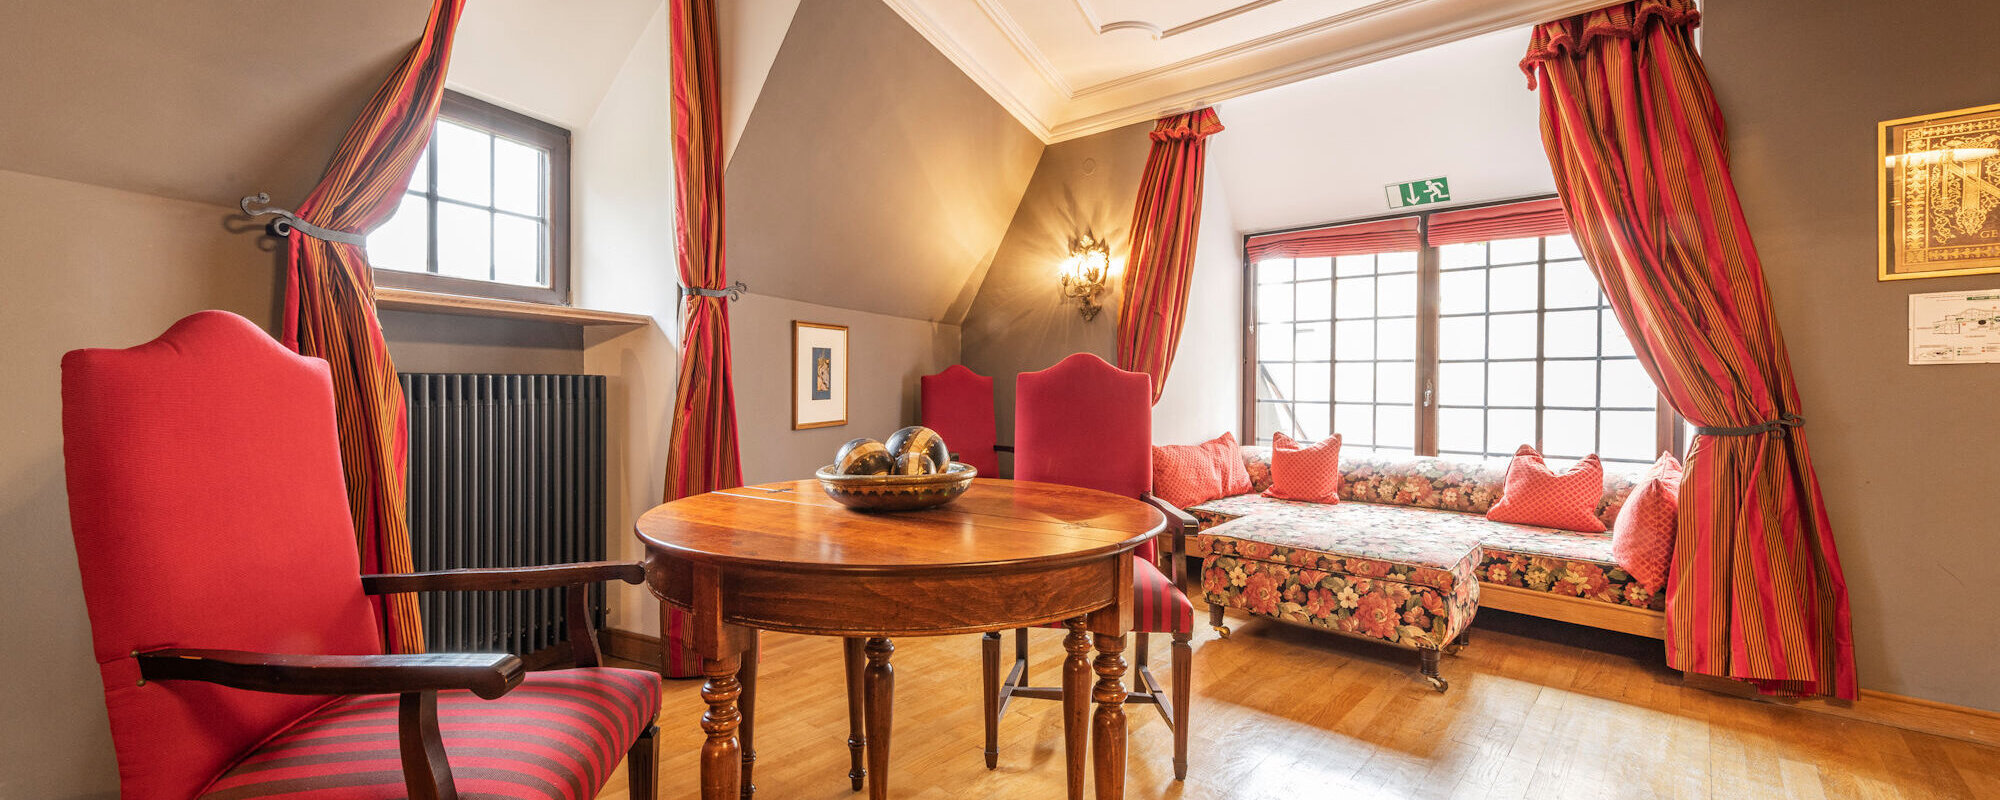 Ein nobles Zimmer mit Holzboden Möbeln aus der Biedermeierzeit.